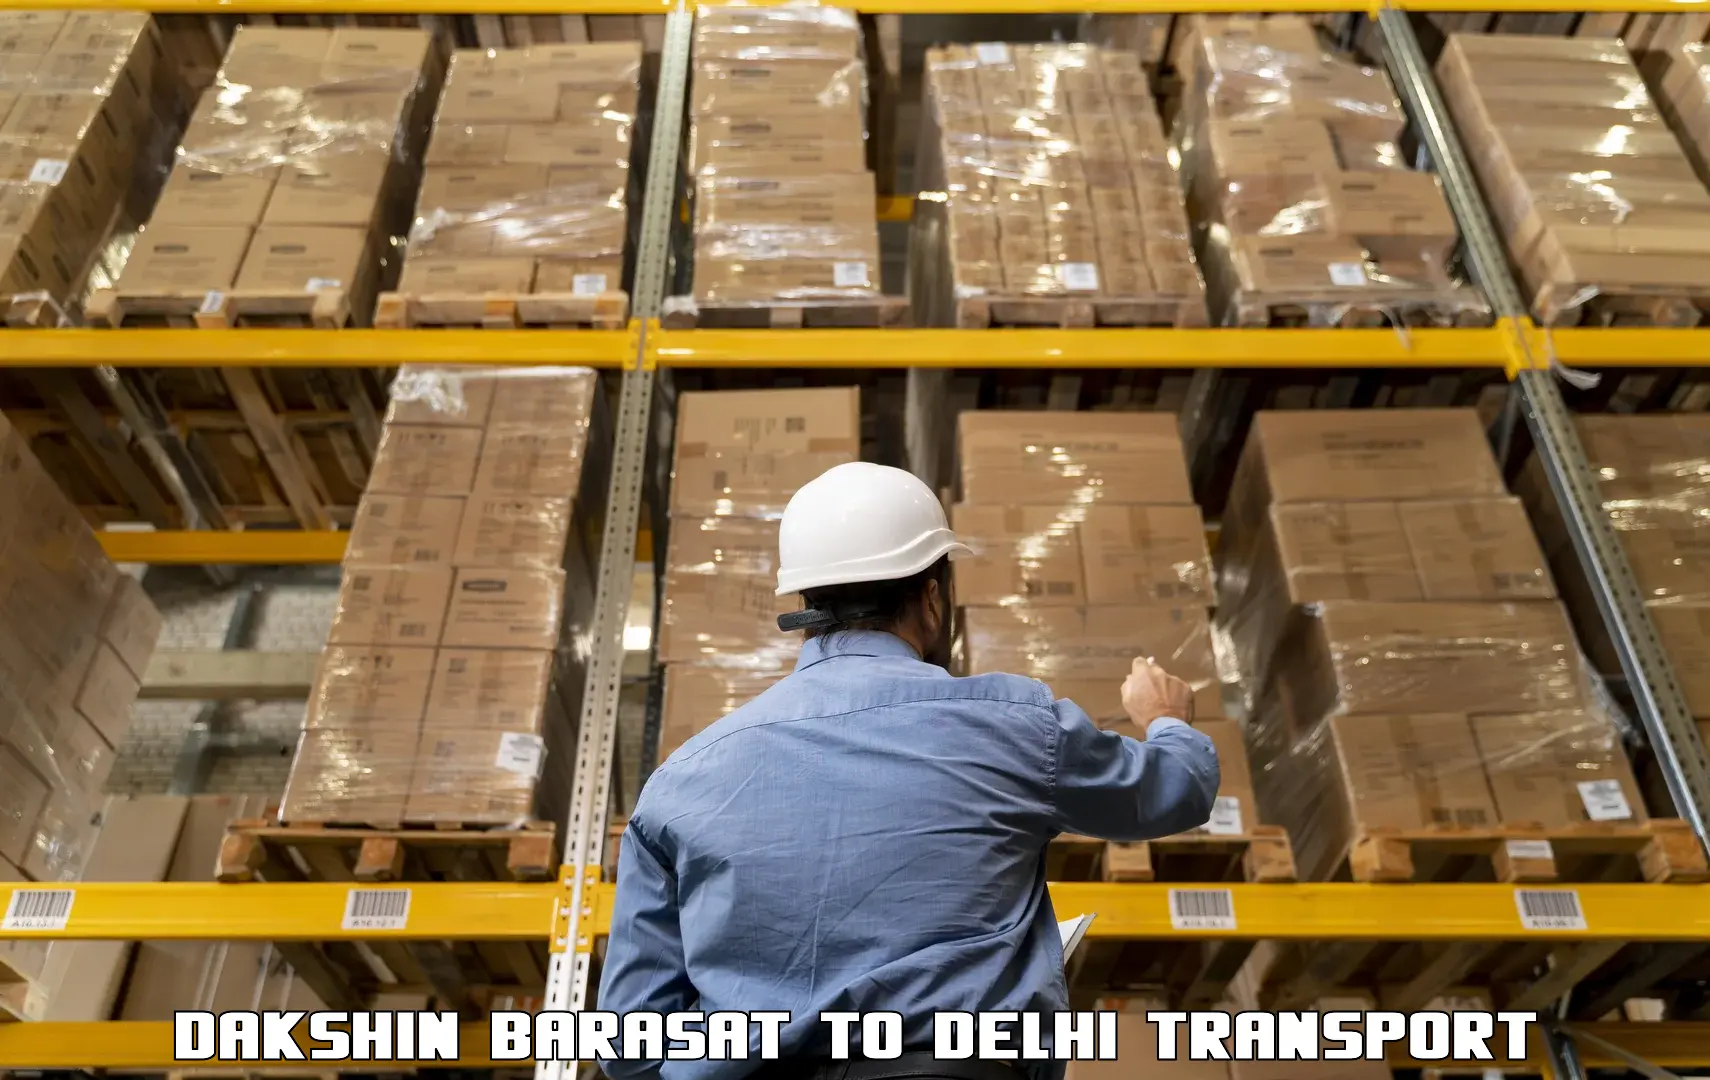 International cargo transportation services in Dakshin Barasat to Delhi